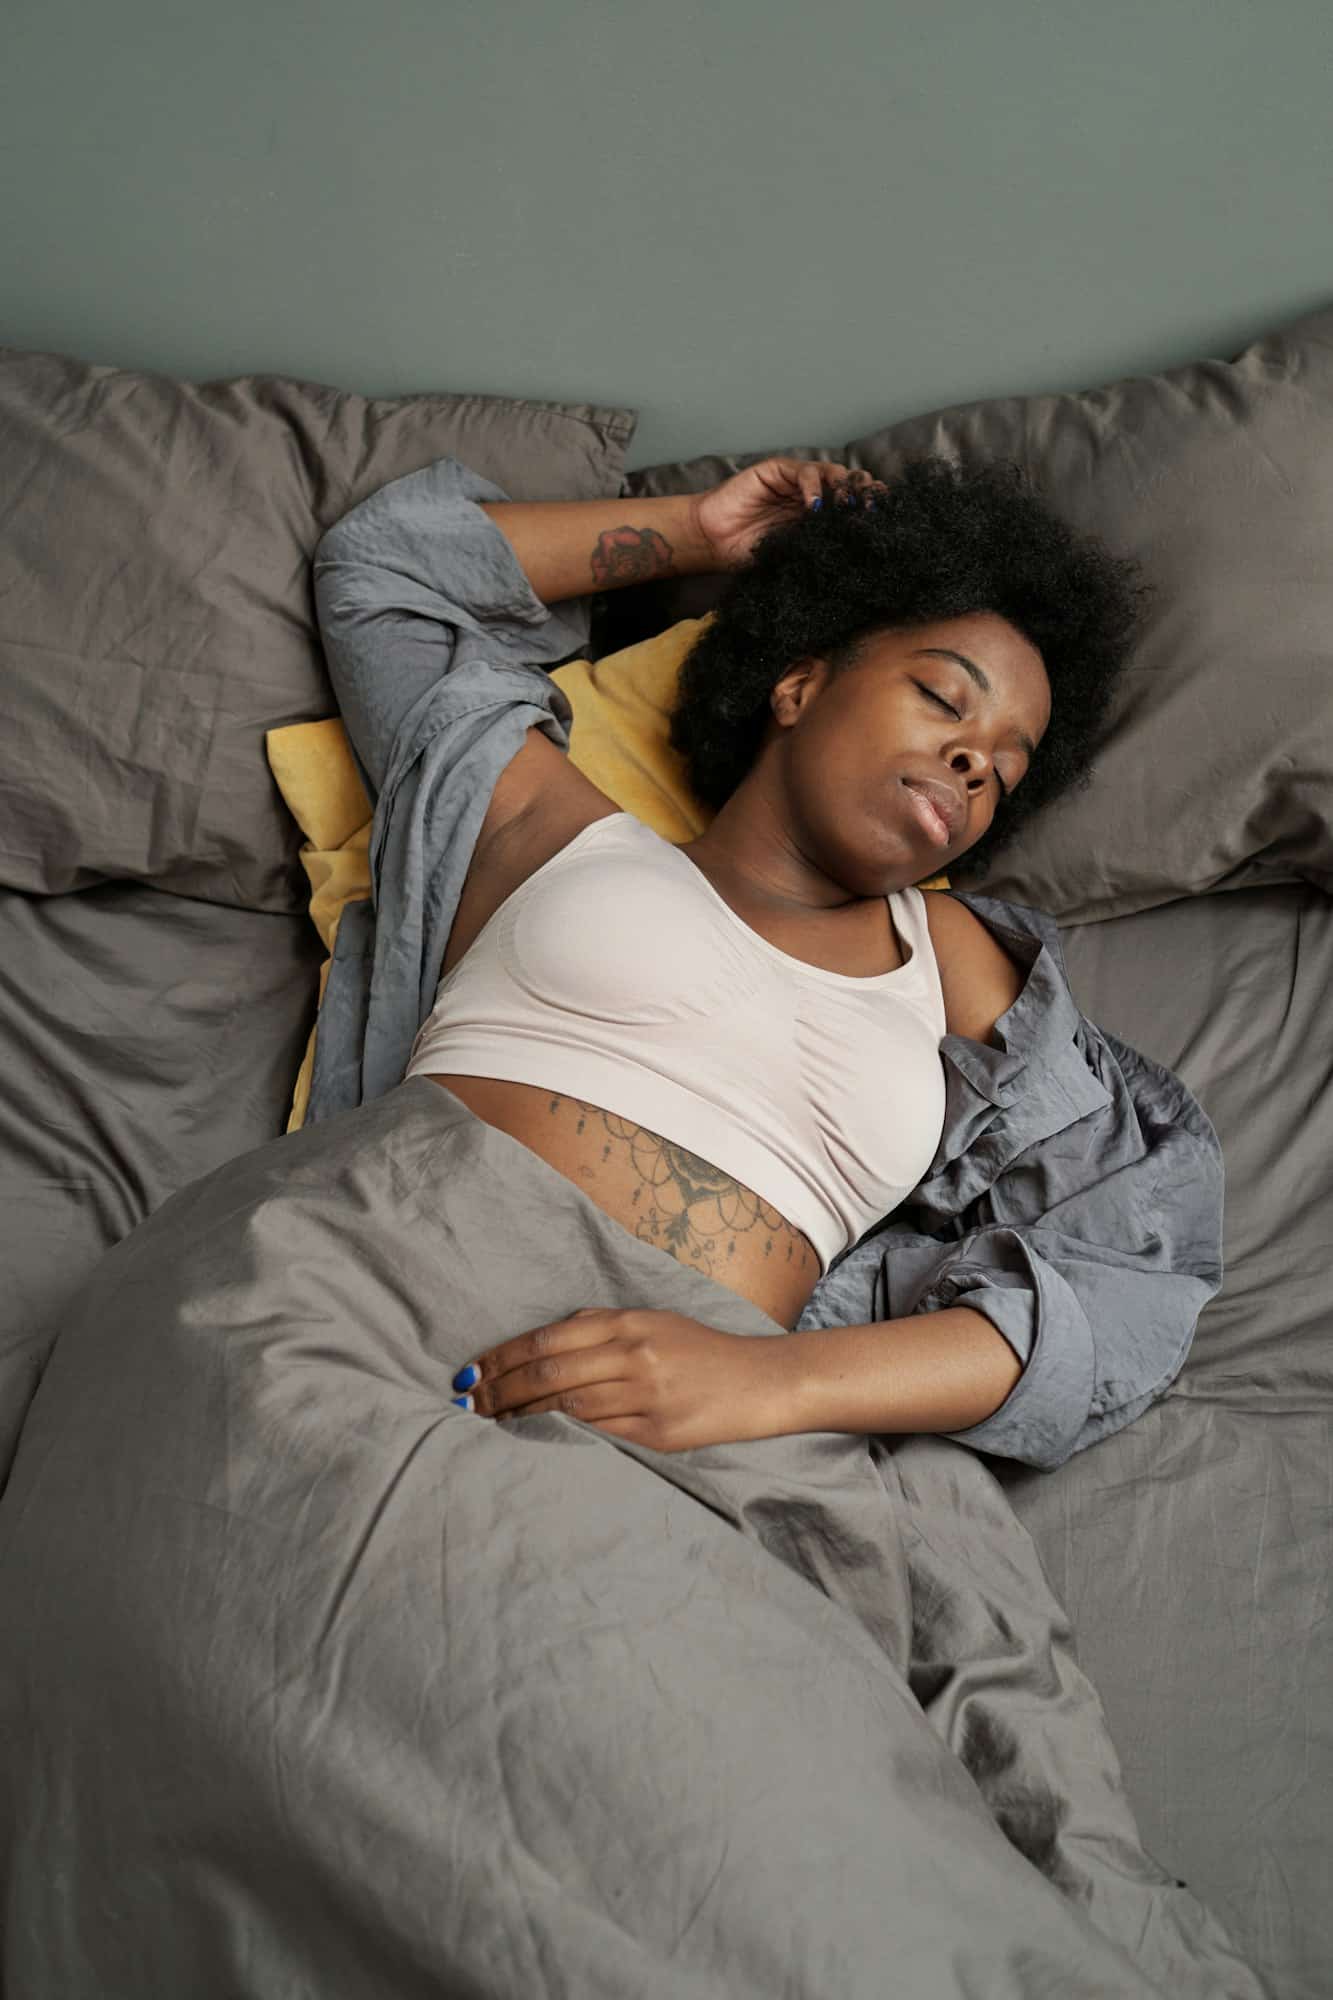 Ύπνος: Αν έχετε άπνοια και κοιμάστε λιγότερο από 7 ώρες αυξάνεται ο κίνδυνος θνησιμότητας